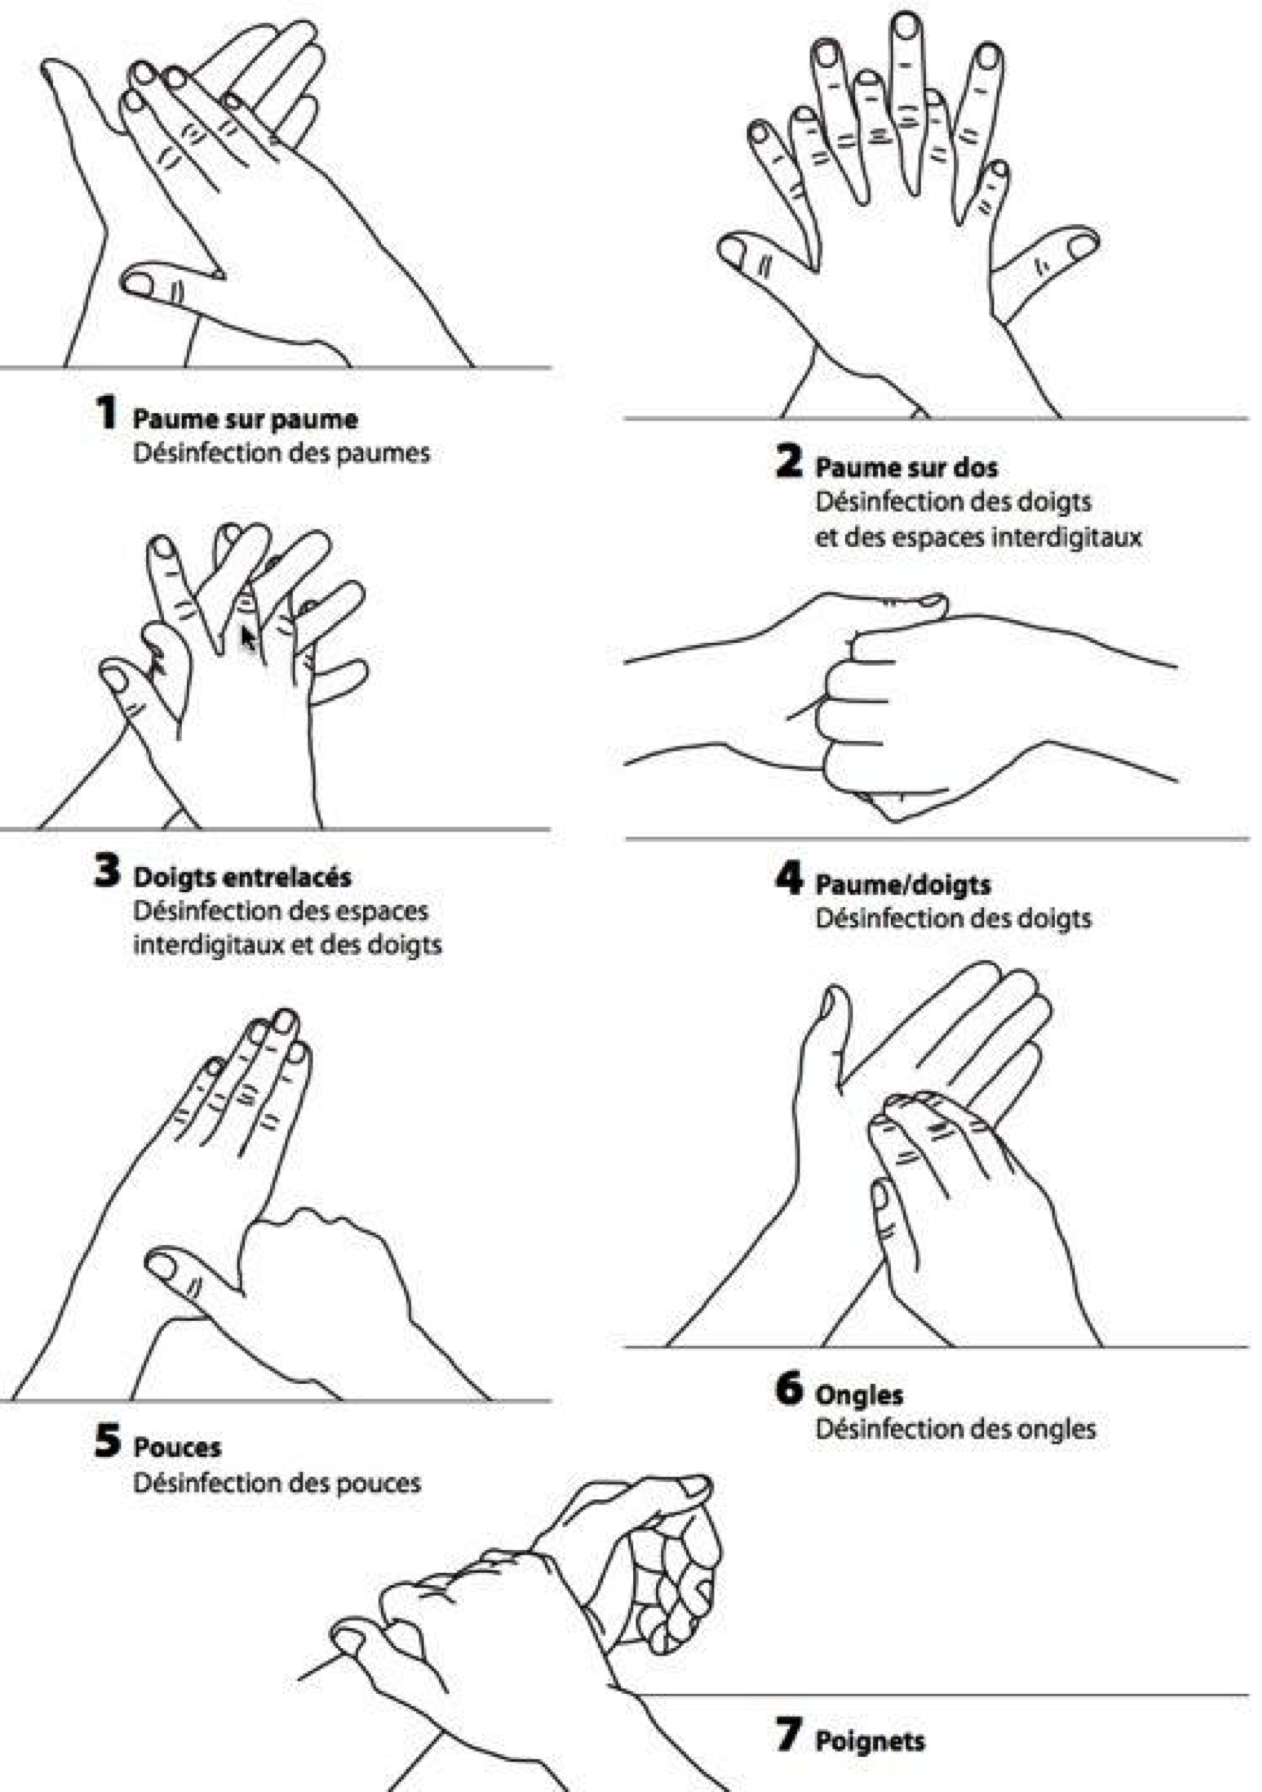 Les bonnes pratiques pour se désinfecter les mains